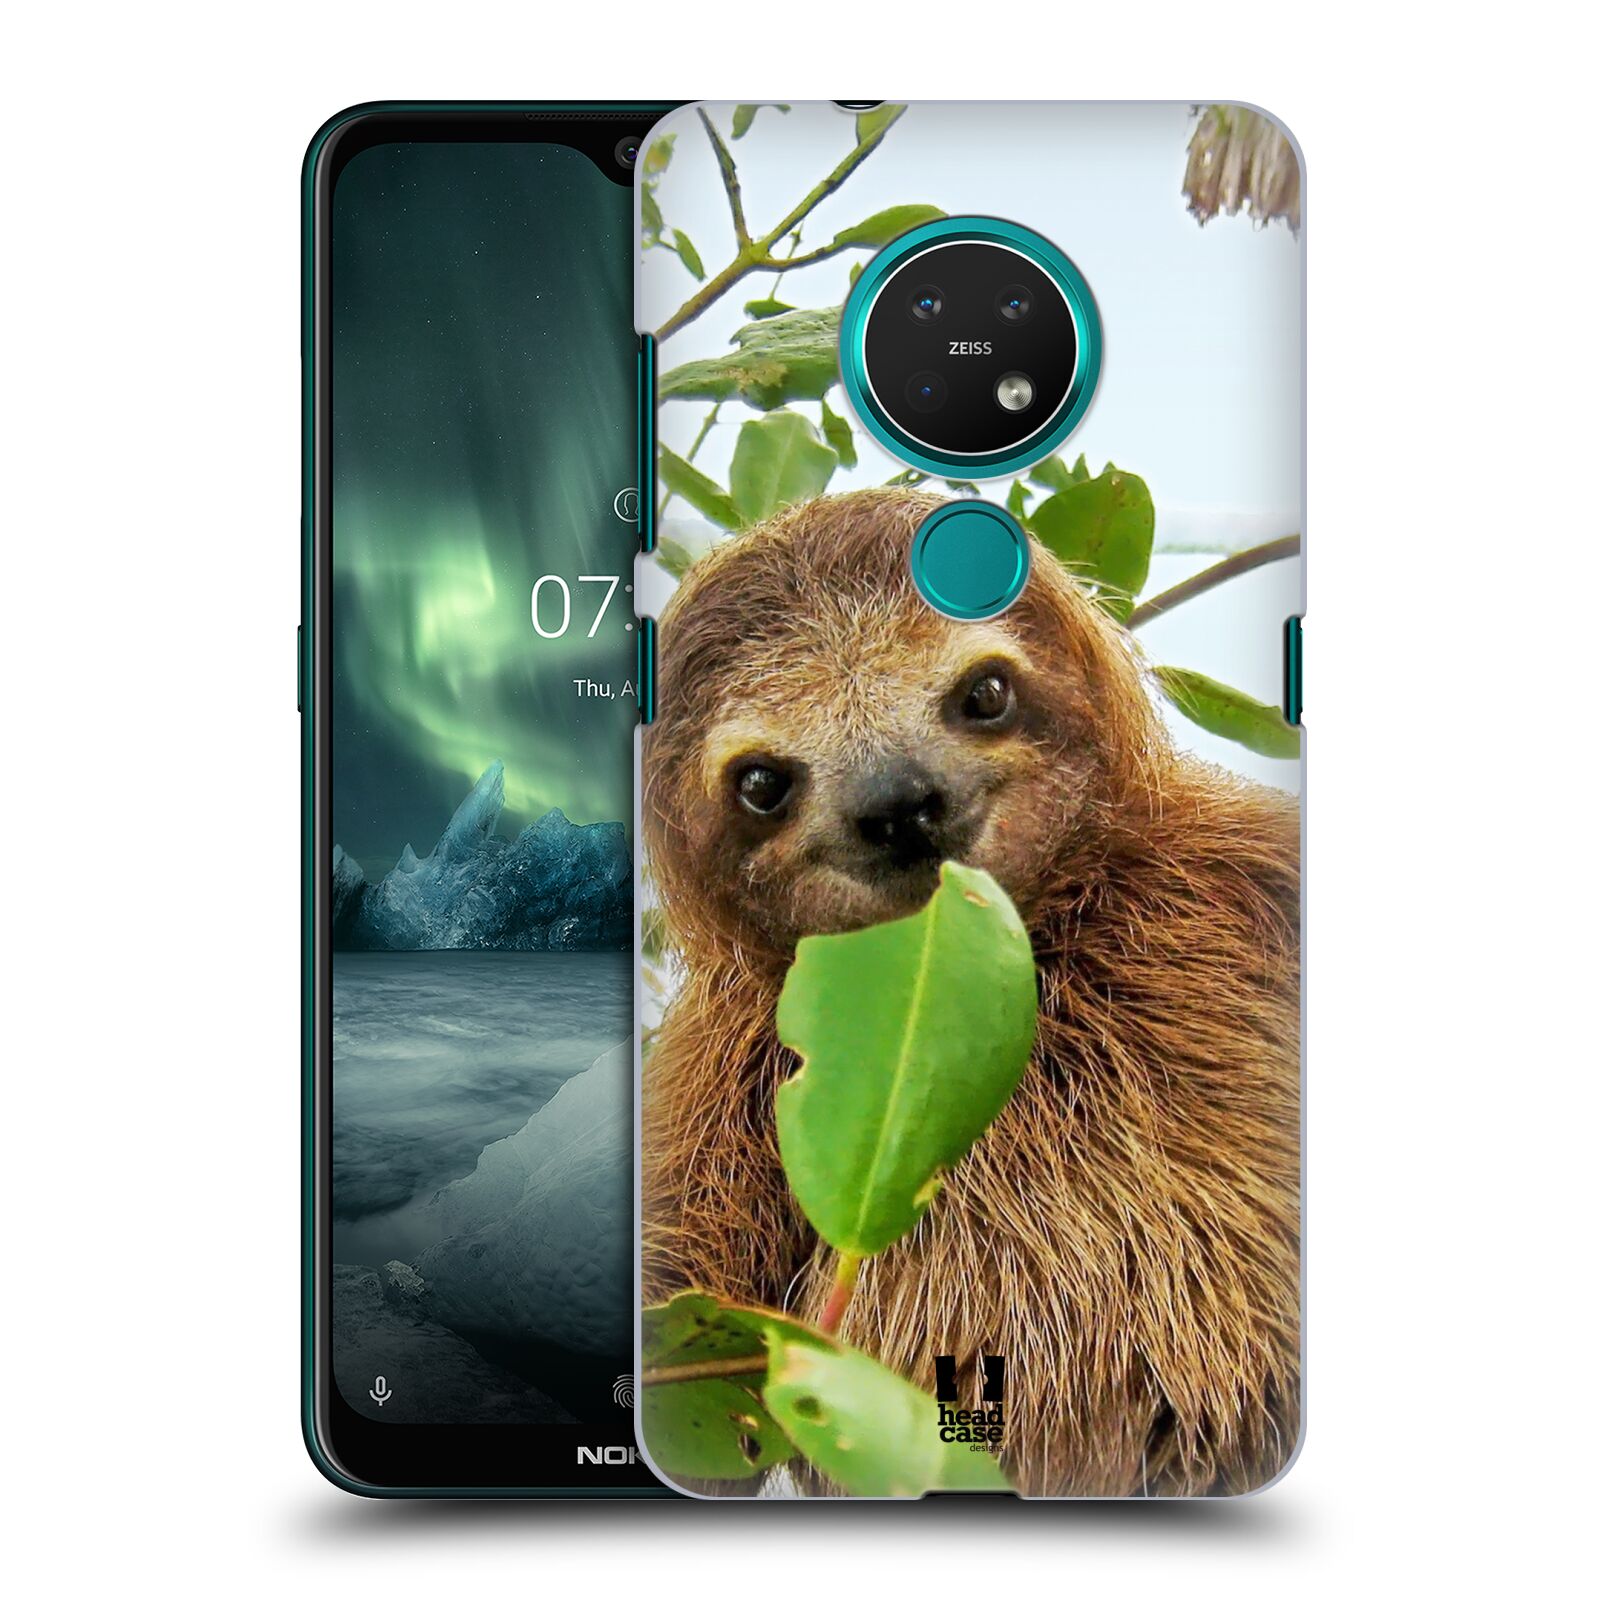 Pouzdro na mobil NOKIA 7.2 - HEAD CASE - vzor slavná zvířata foto lenochod